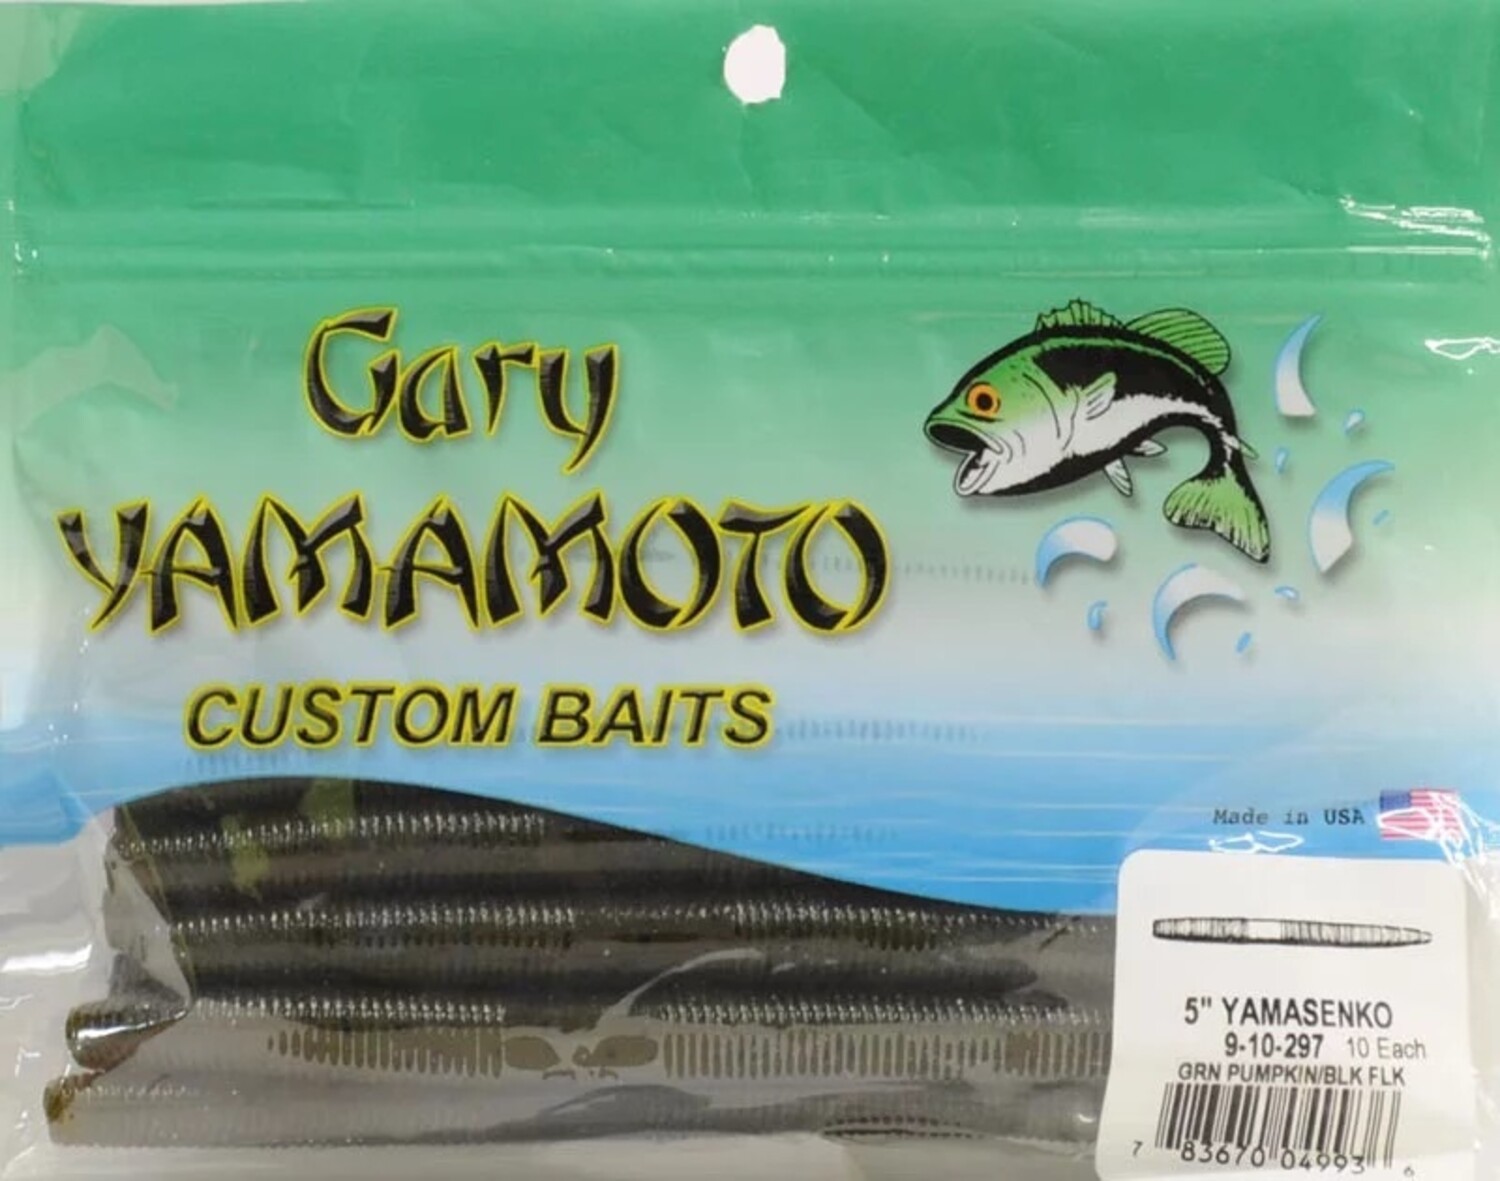 GSM outdoors Gary Yamamoto Custom Baits